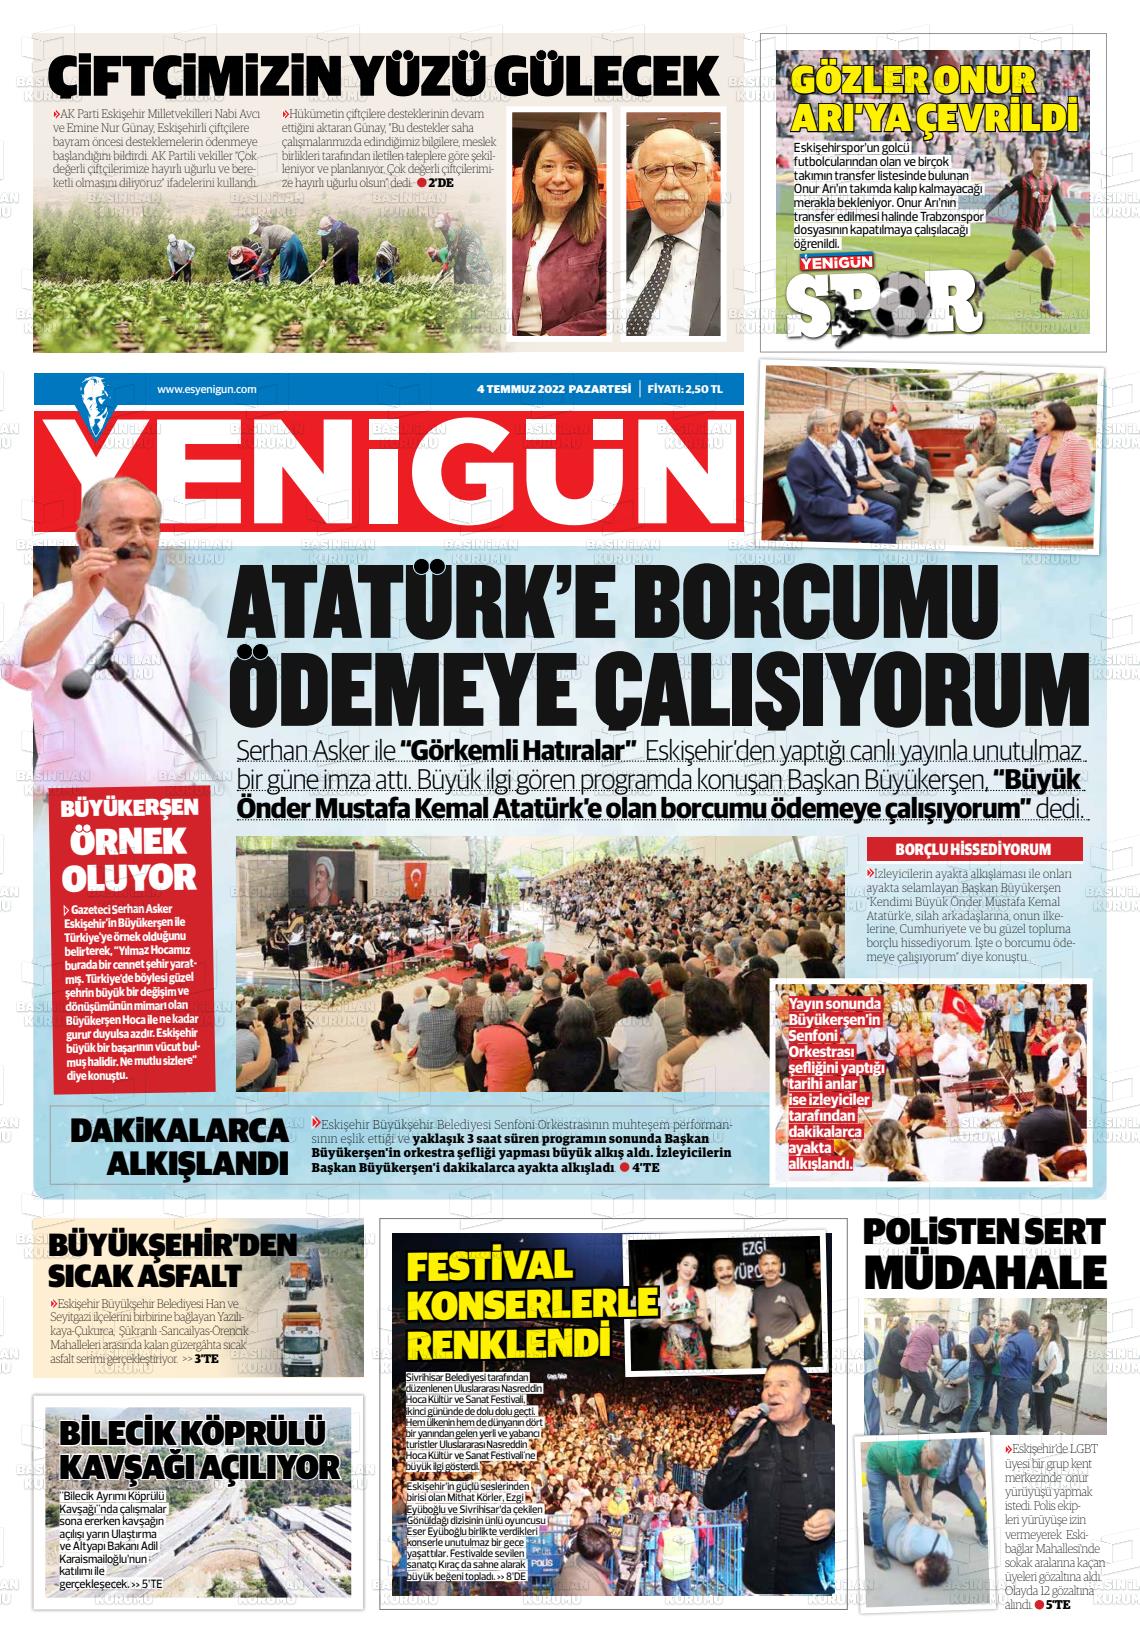 04 Temmuz 2022 Eskişehir Yeni Gün Gazete Manşeti